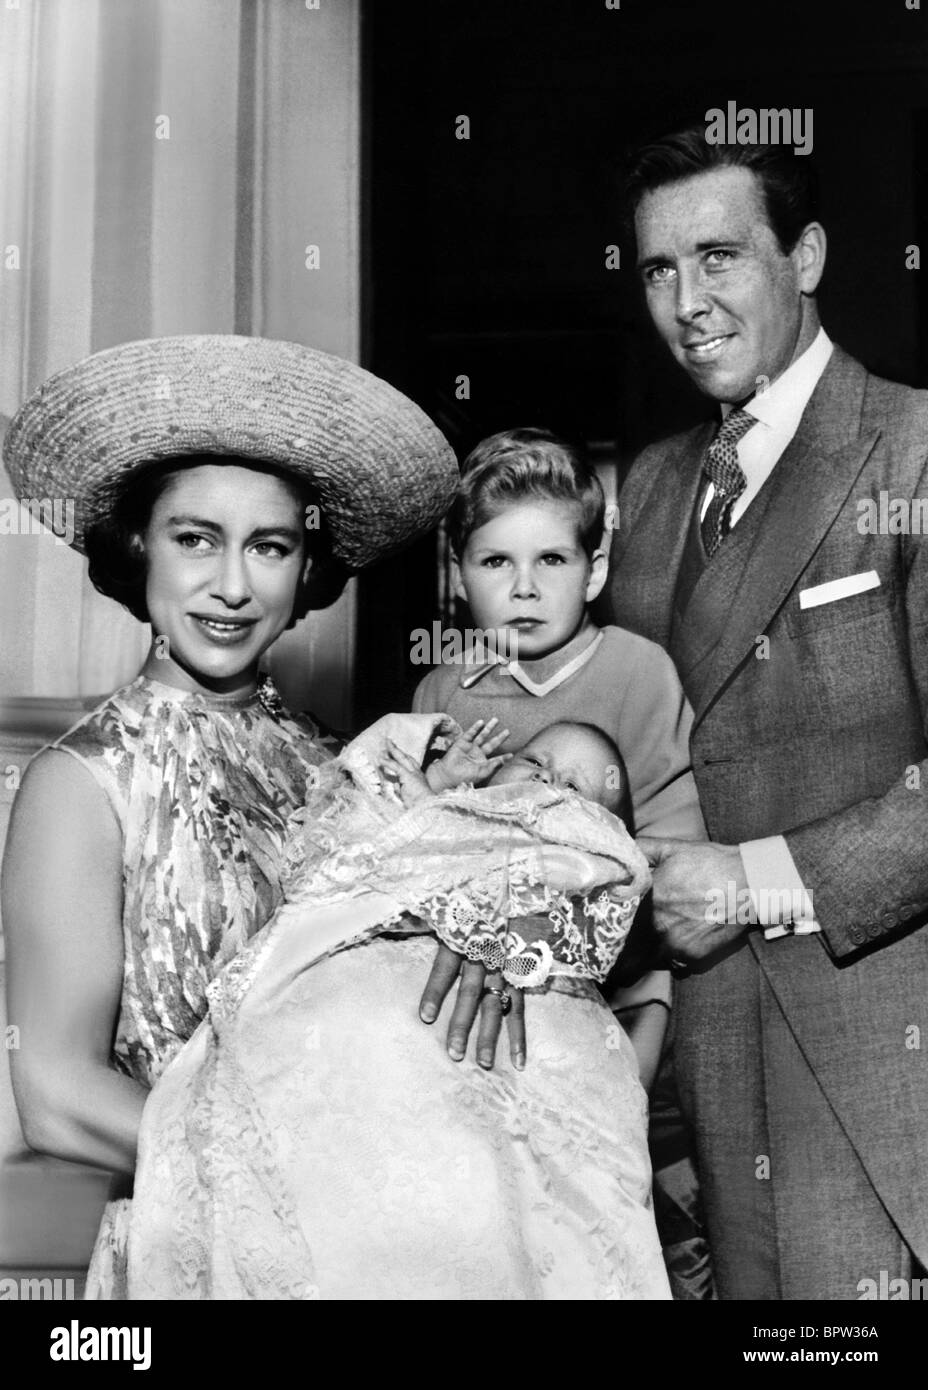 SARAH Princess Margaret LINLEY & LORD SNOWDON familia real el 10 de junio de 1964 Foto de stock